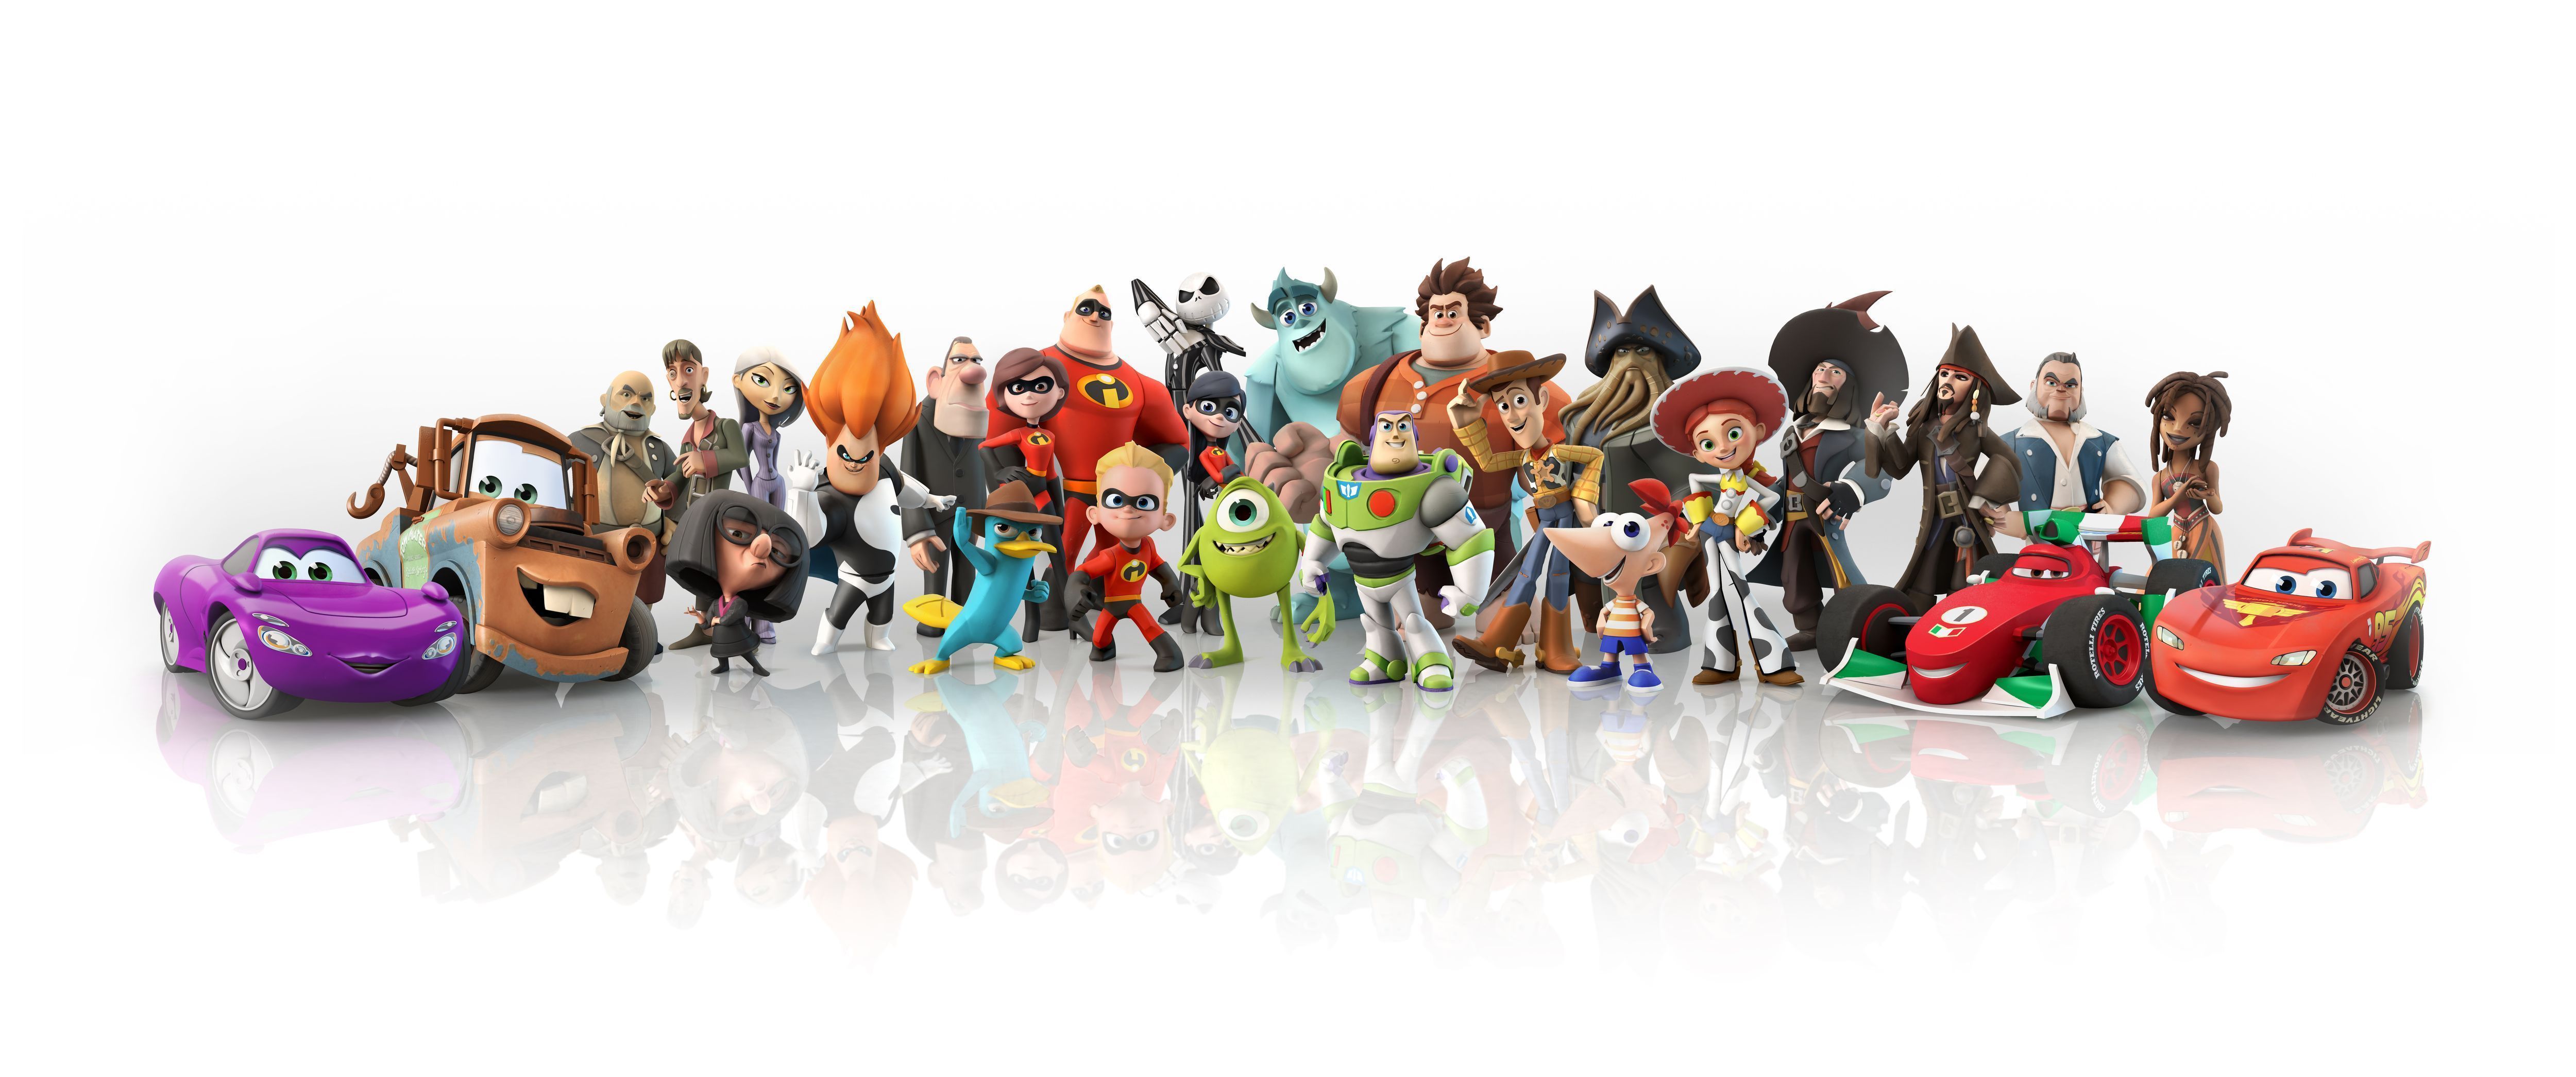 Disney Pixar Backgrounds Group 74 Images, Photos, Reviews